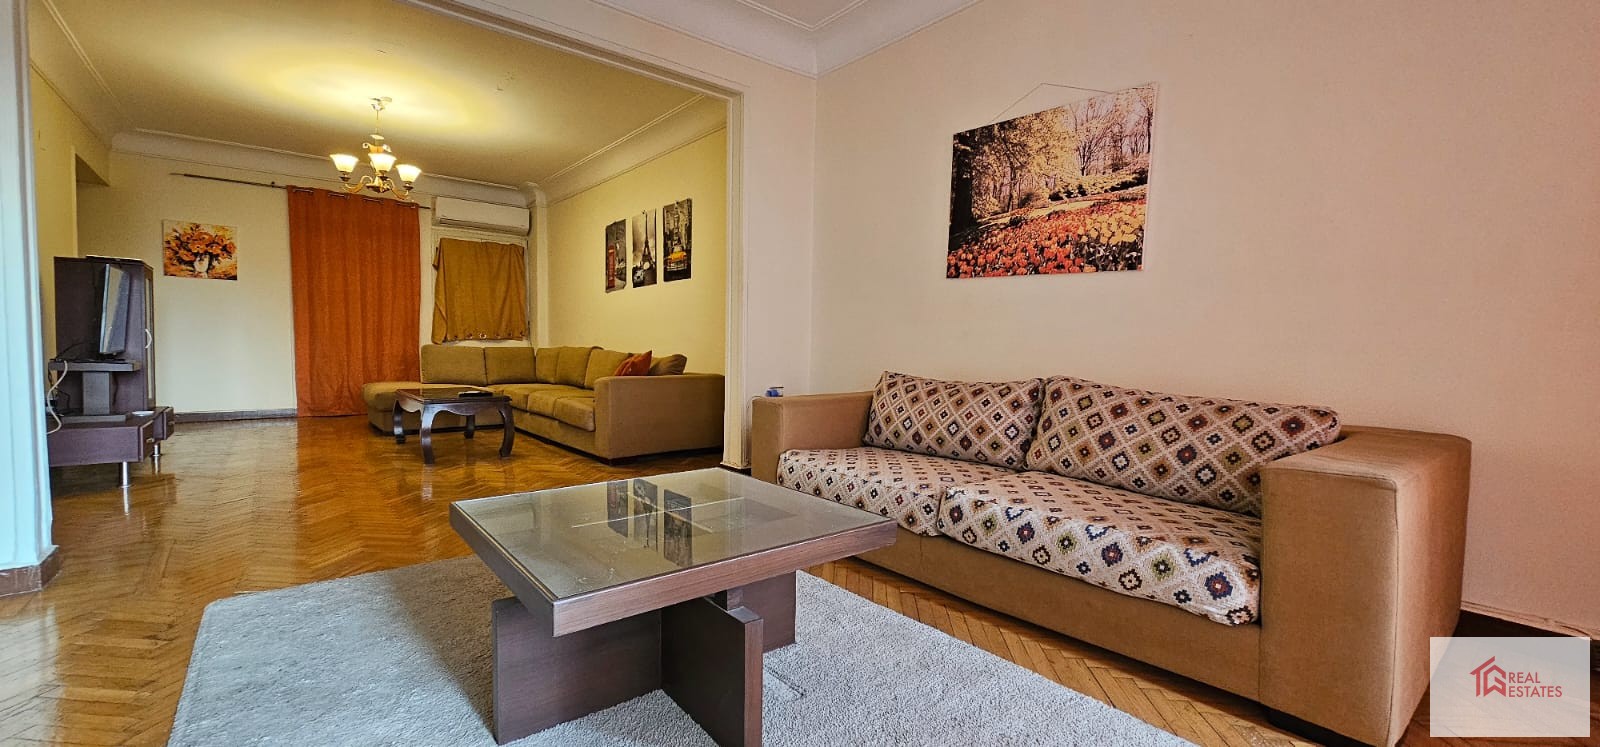 埃及开罗 elmalek el Afdal Zamalek 出租带家具的公寓，设有 2 间卧室、1 间浴室、1 个卫生间和 1 个阳台，可欣赏尼罗河景观。 租